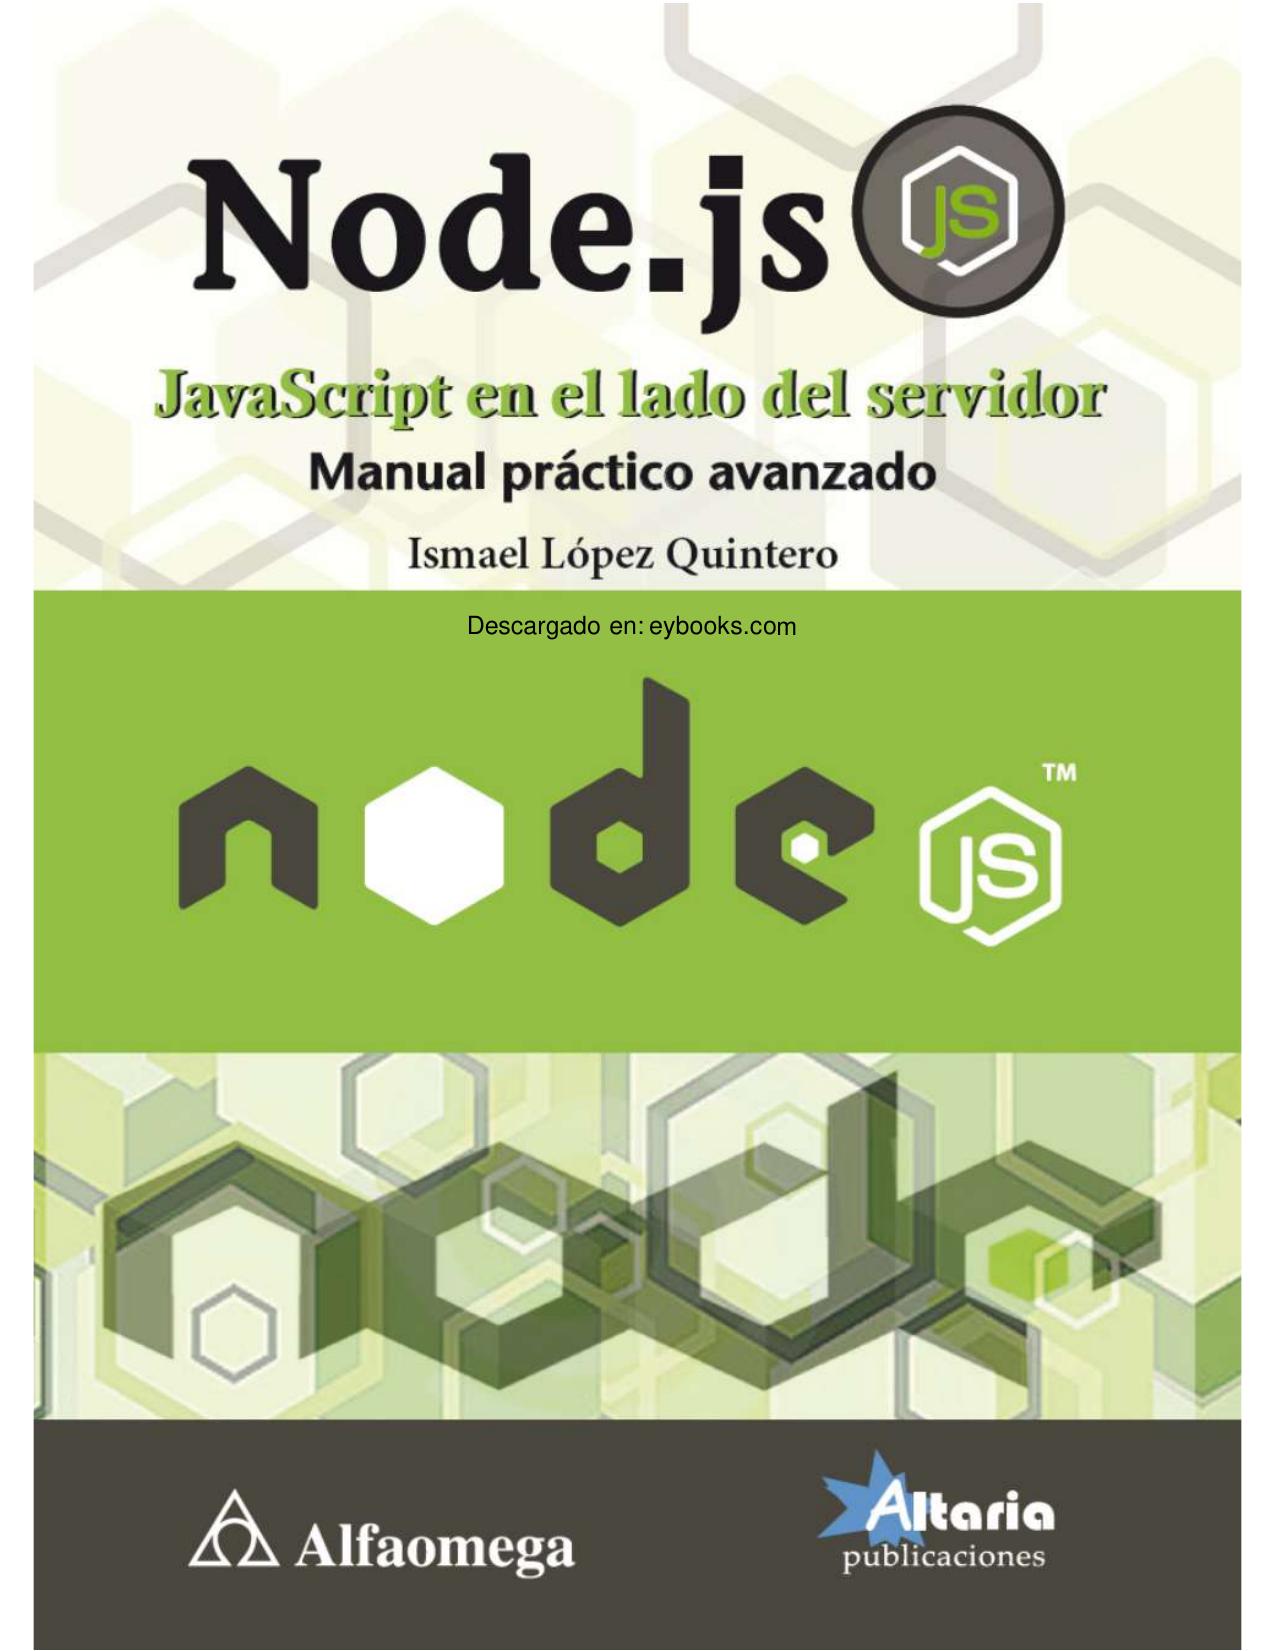 Node.js: JavaScript en el lado del servidor. Manual práctico avanzado